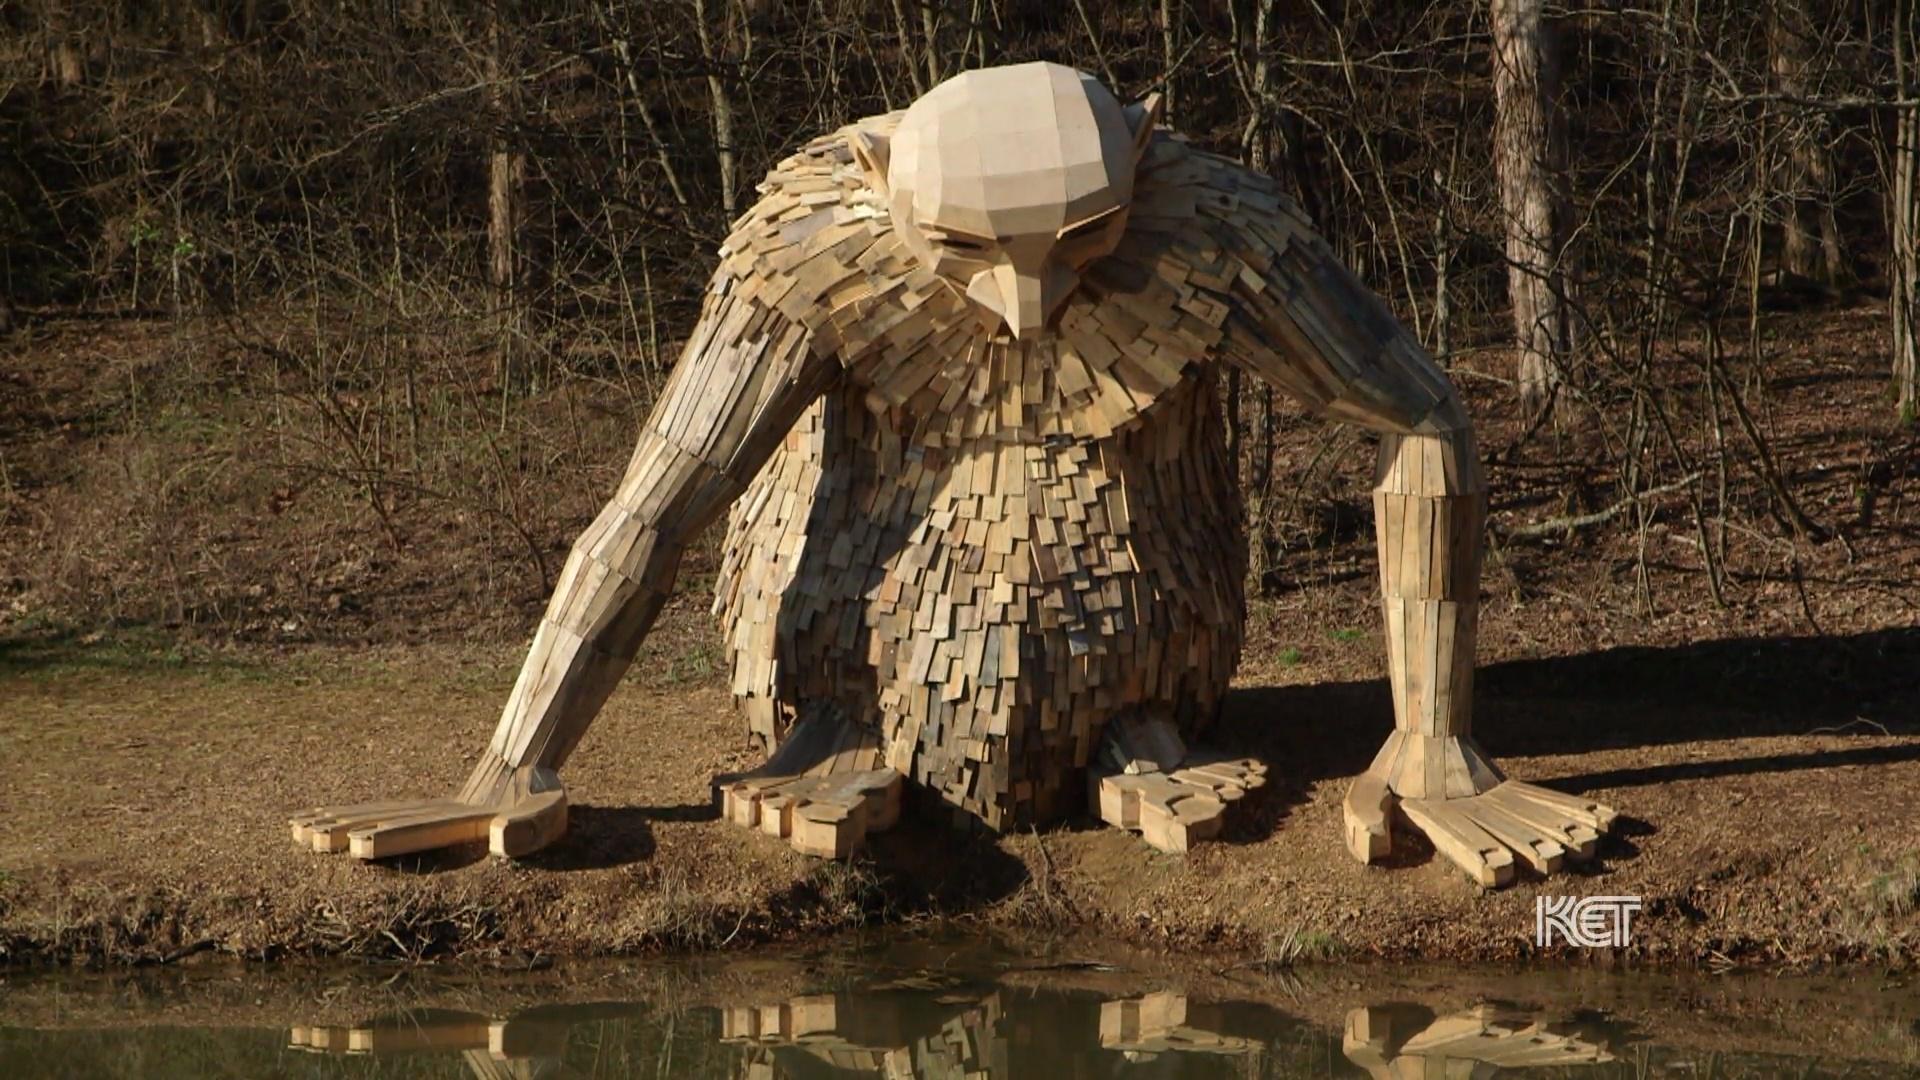 Giant Wood Sculptures in Copenhagen Are Treasure Hunt Of Recycled Art